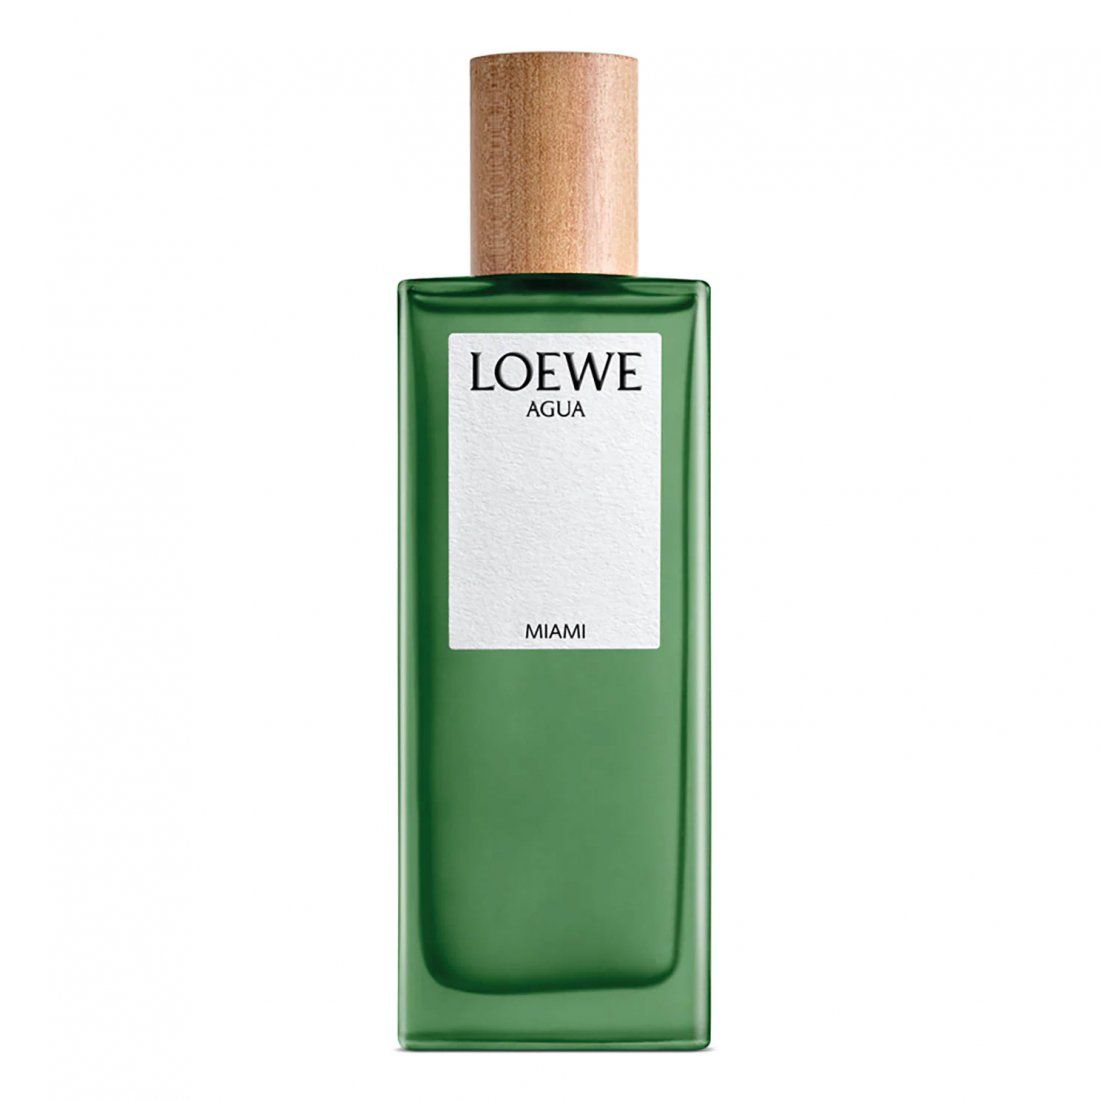 Loewe - Eau de toilette 'Agua de Loewe Miami' - 150 ml